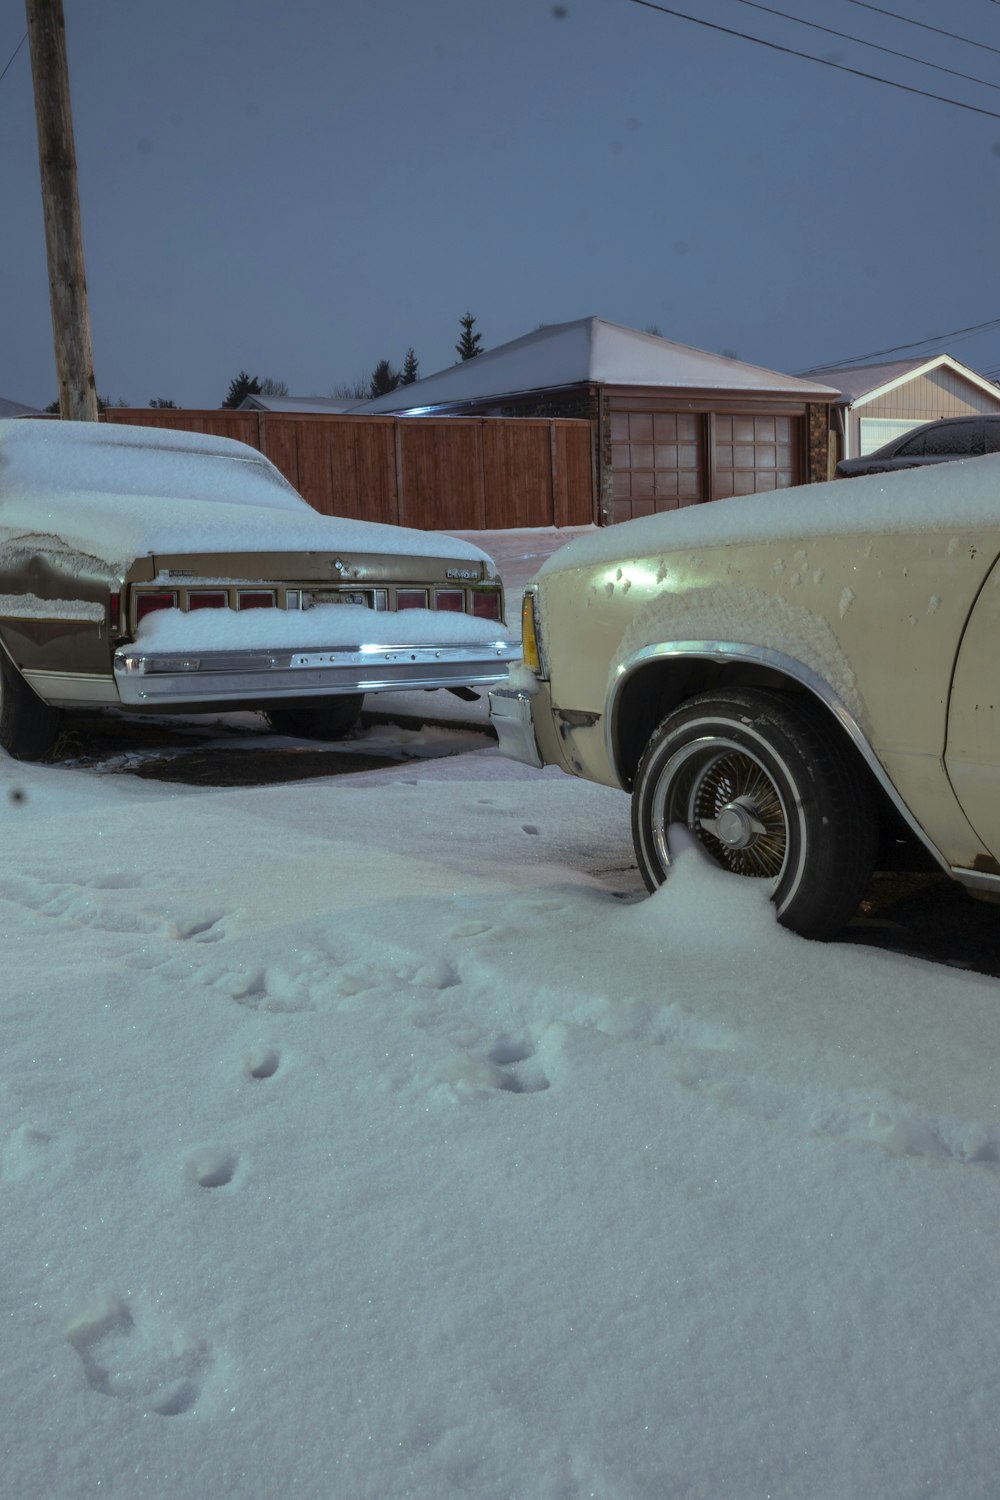 un coche aparcado en la nieve junto a otro coche